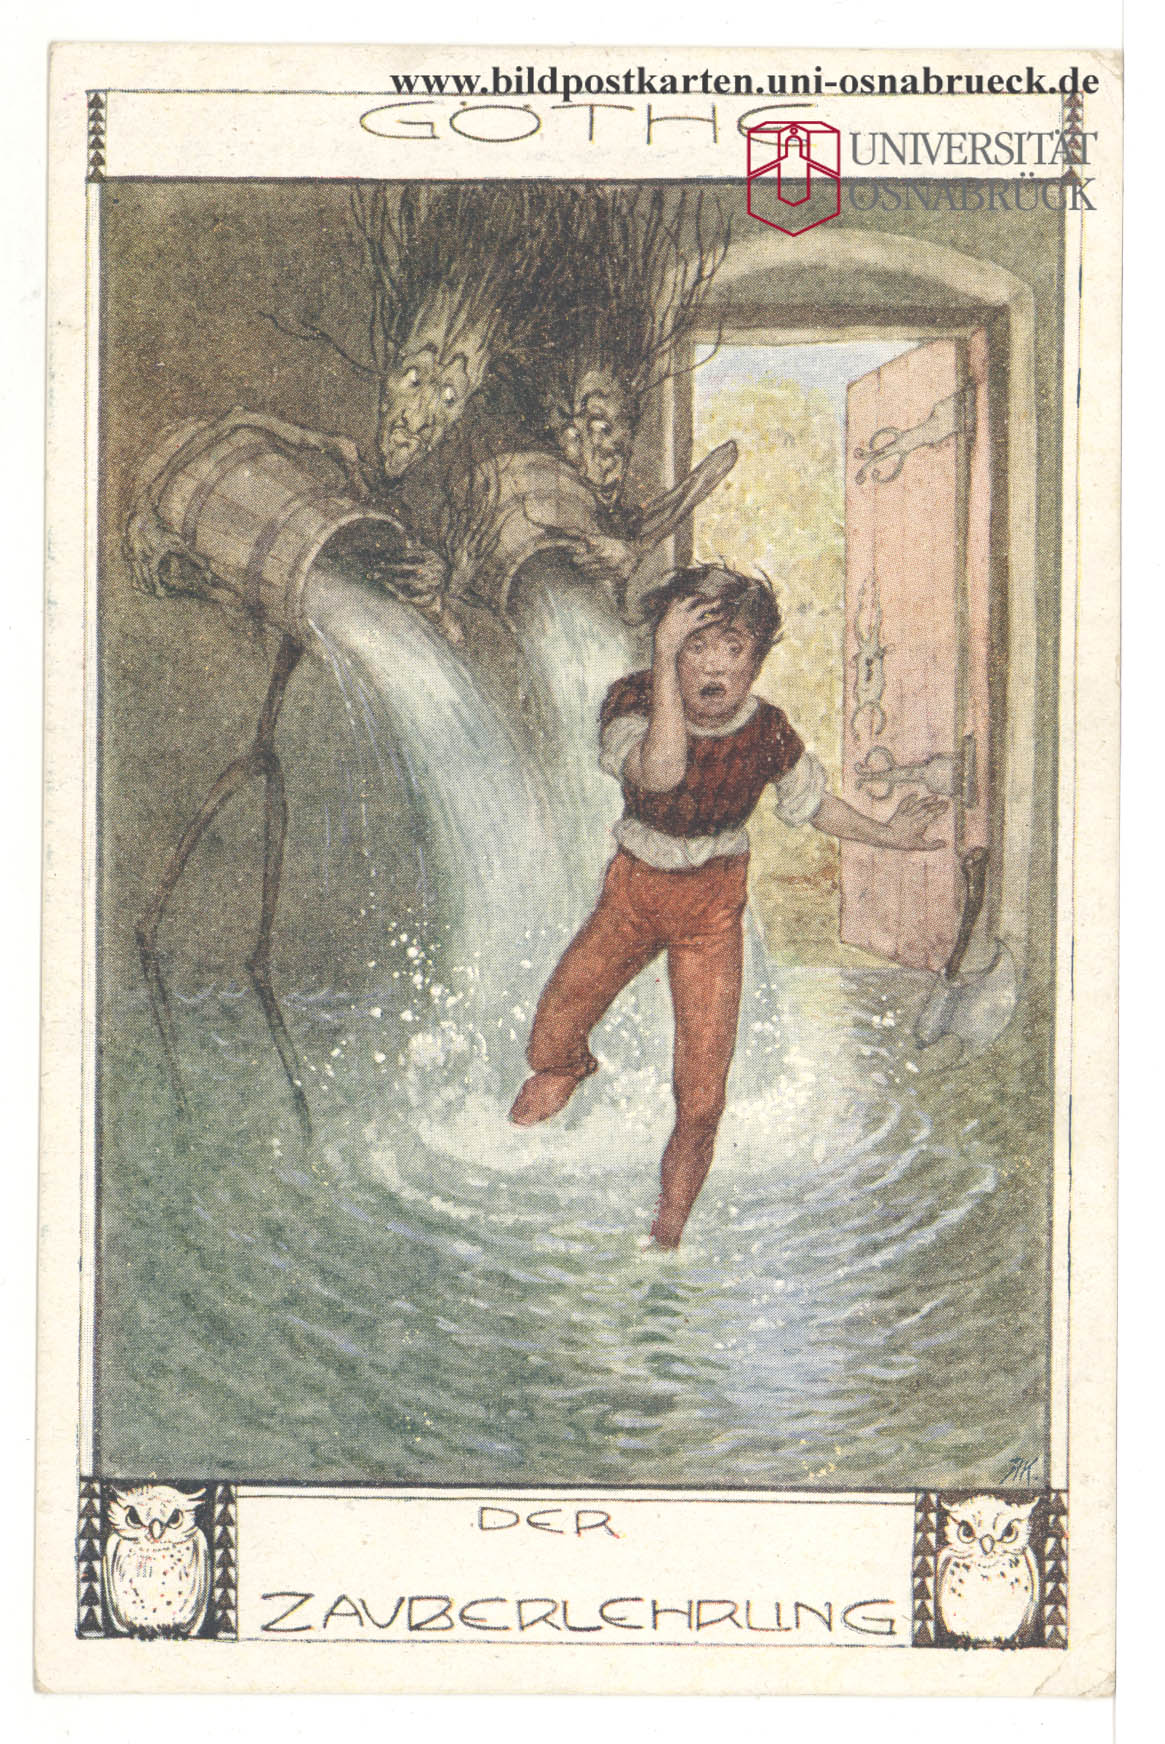 Illustration de l'Apprenti Sorcier, B.K.W.I. 885-4, http://www.bildpostkarten.uni-osnabrueck.de/displayimage.php?pos=-14555, cliquer pour une vue agrandie